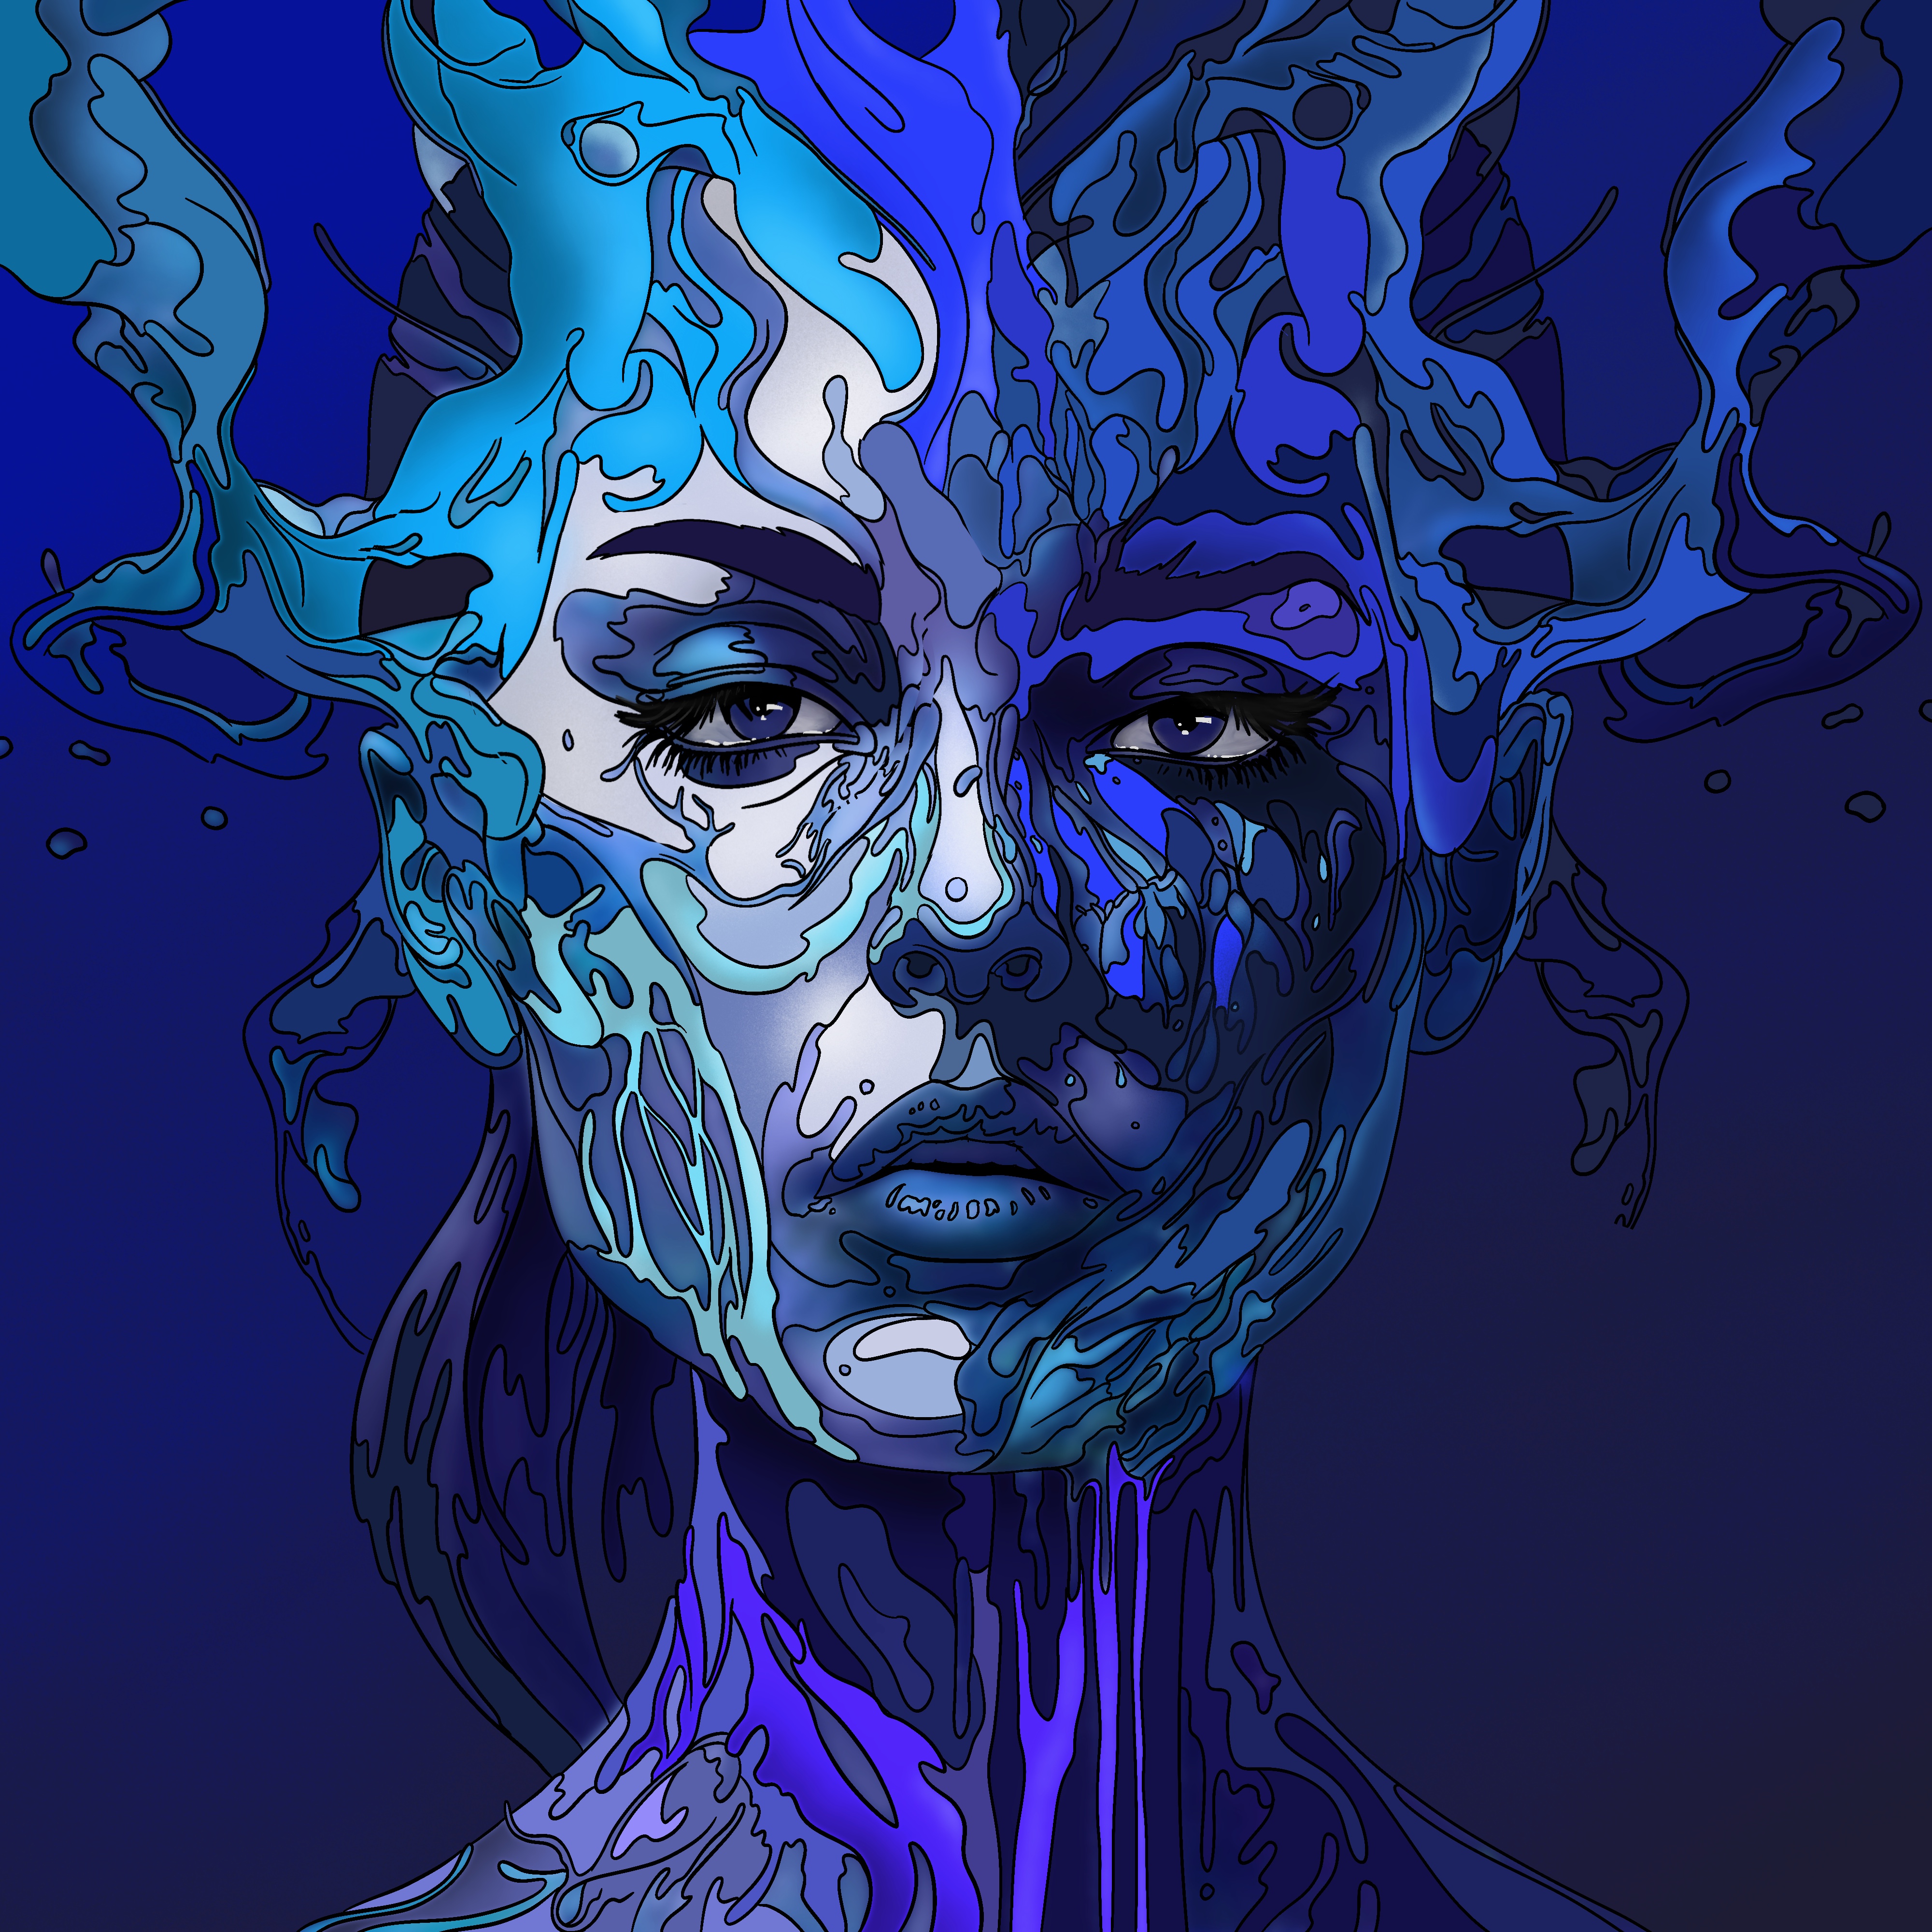 Deep Blue by Dario De Siena